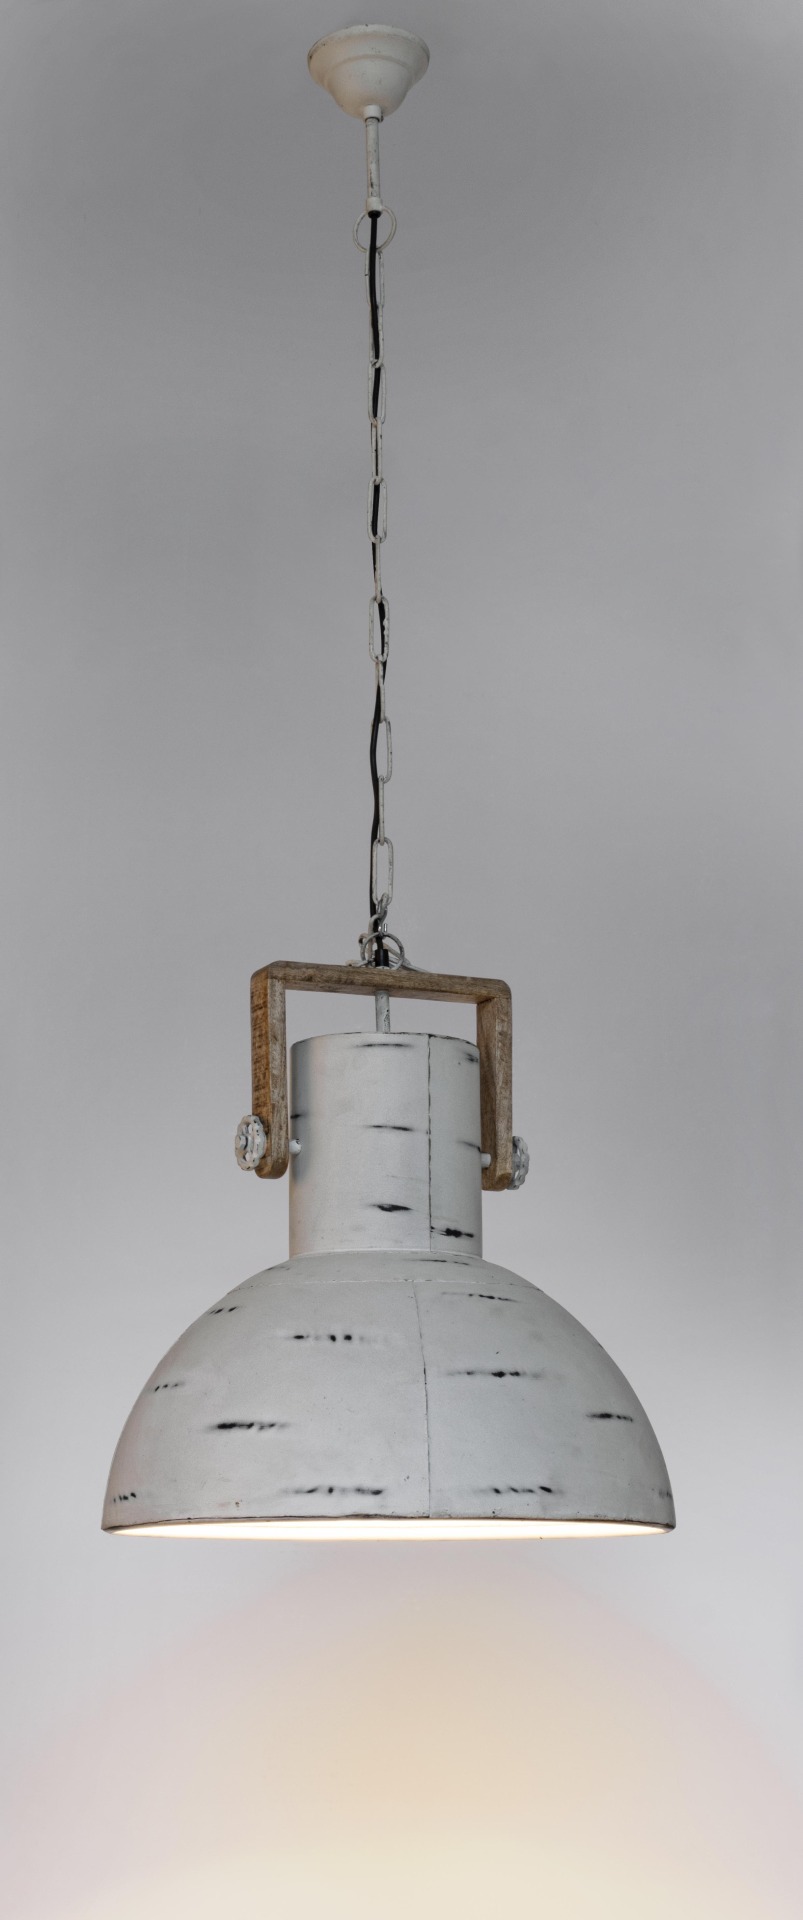 Die Hängeleuchte Odessa überzeugt mit ihrem industriellen Design. Gefertigt wurde sie aus Mangoholz, welches einen natürlichen Farbton besitzt. Der Lampenschirm ist aus Metall und haben eine weiße Farbe. Die Lampe besitzt eine Höhe von 178 cm.